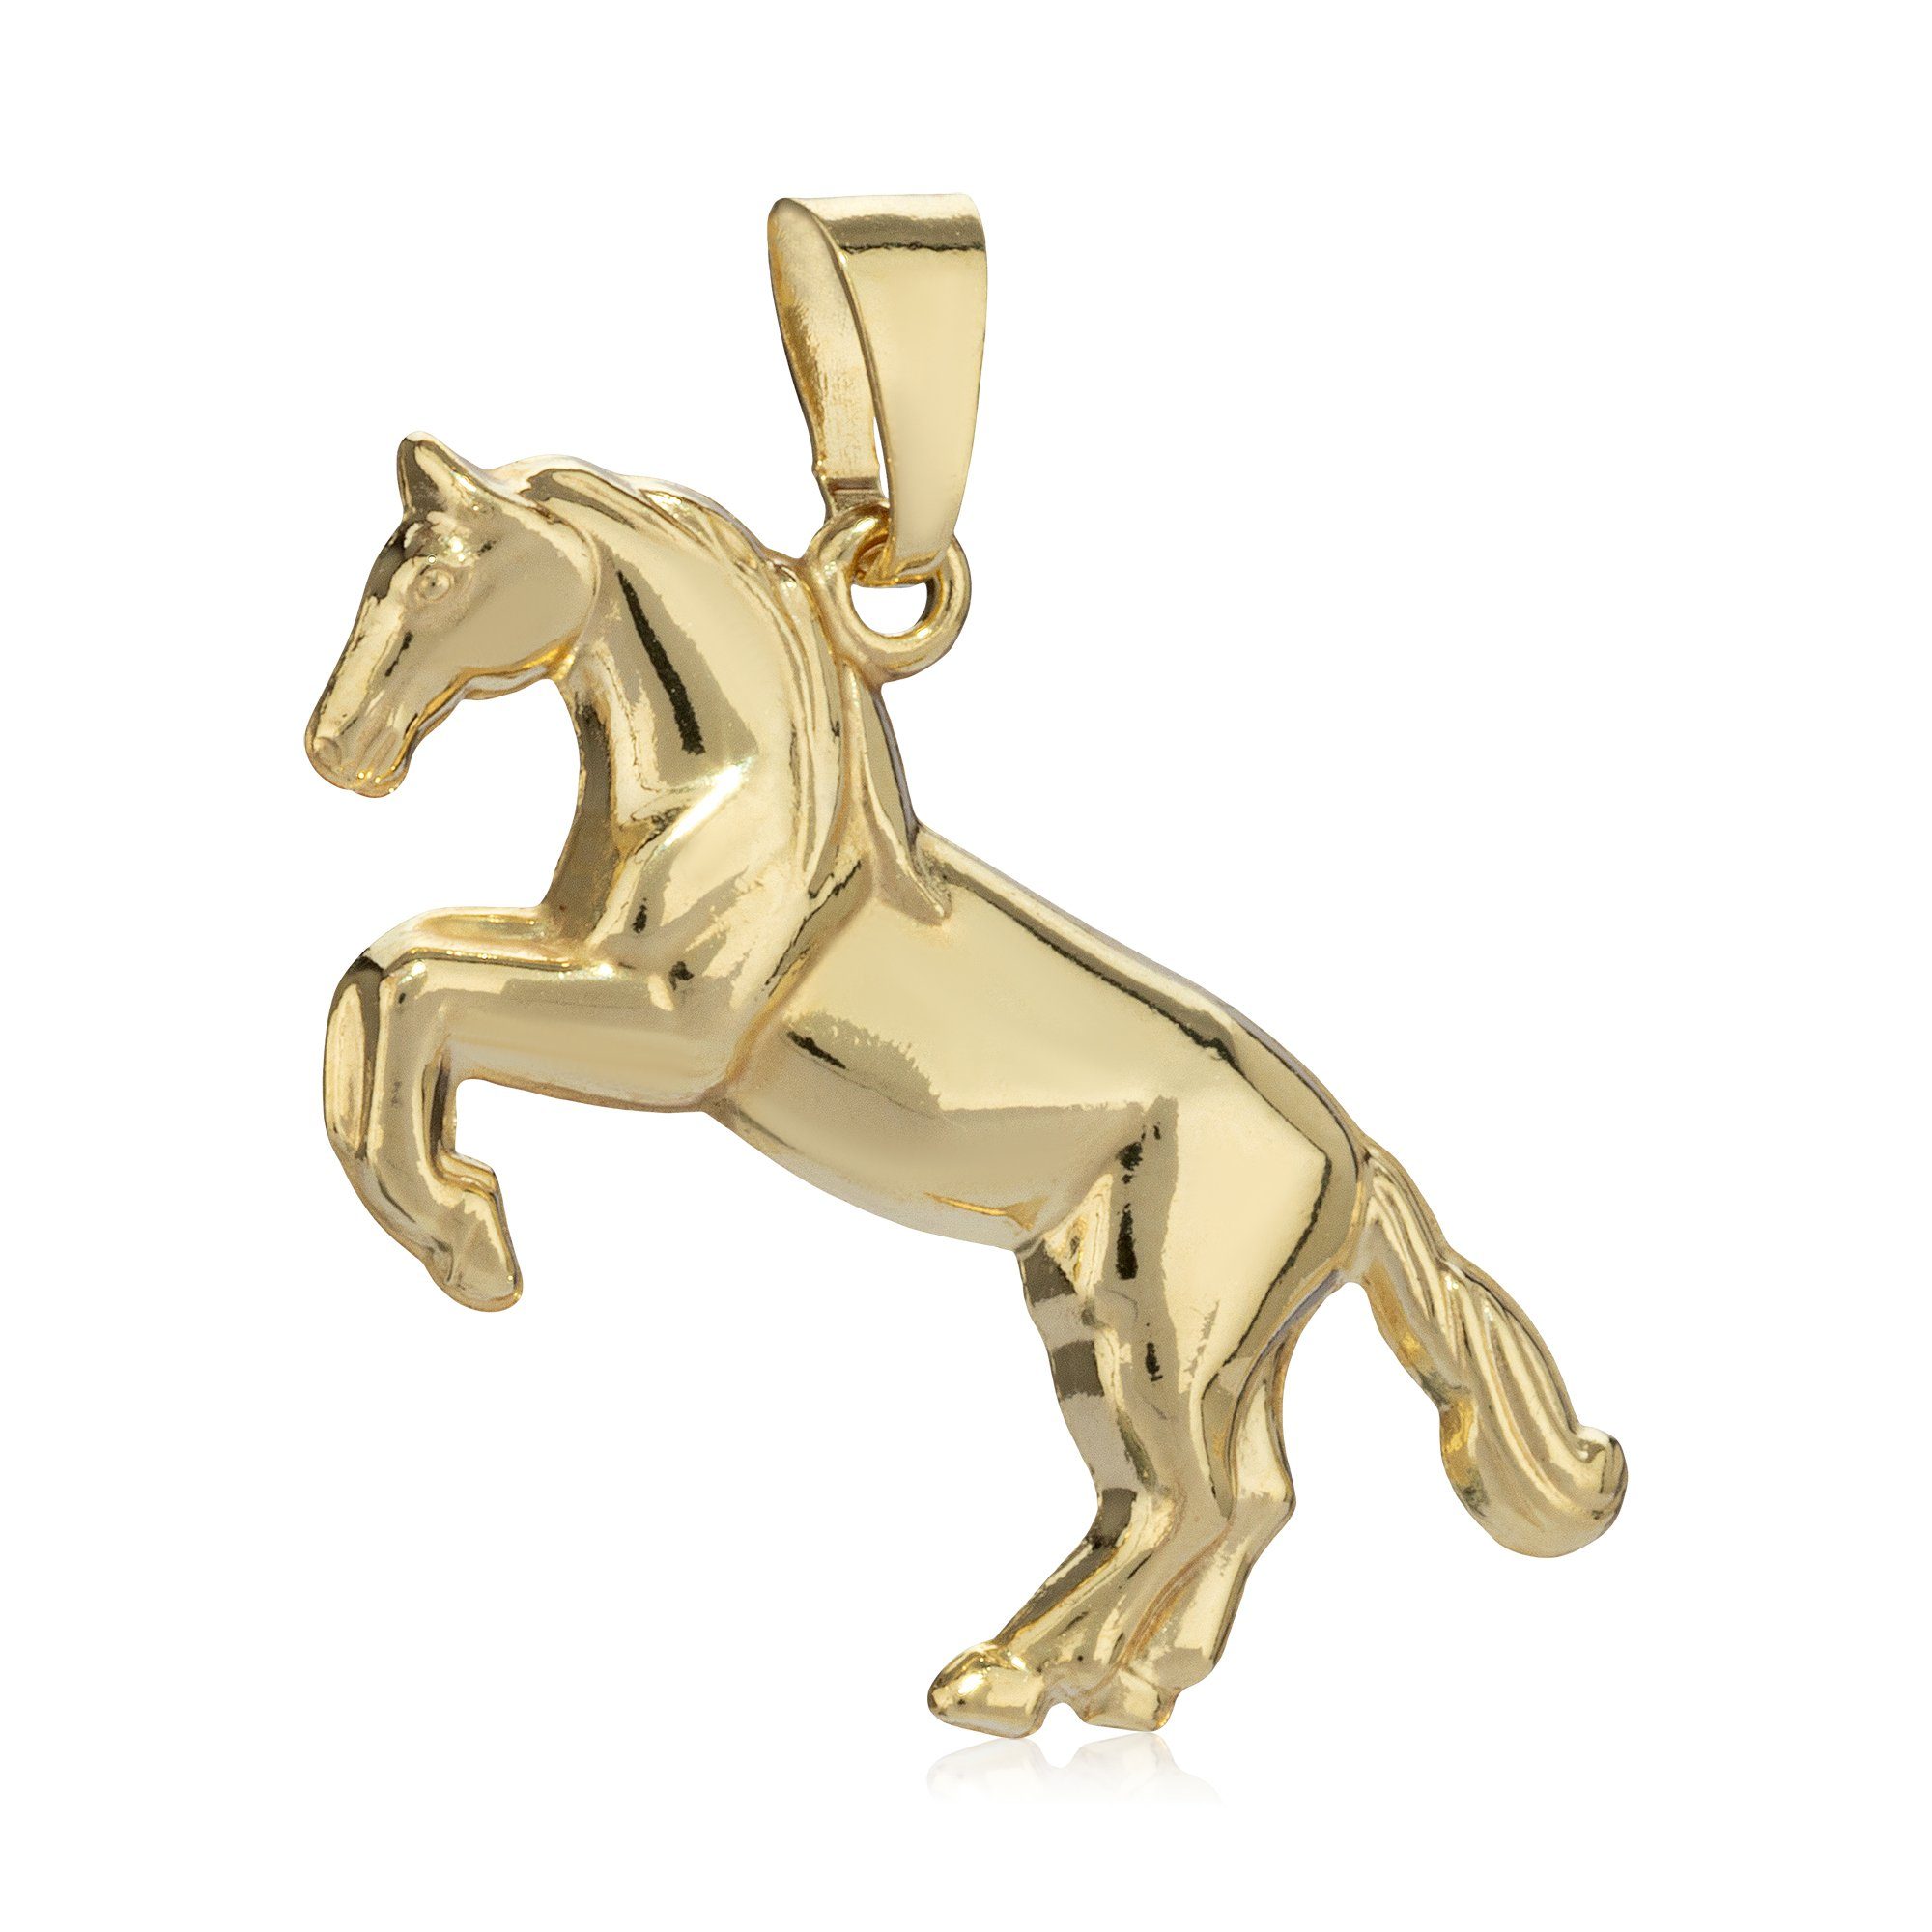 NKlaus Kettenanhänger Kettenanhänger Pferd 333 Gelb Gold 8 Karat 14x26mm